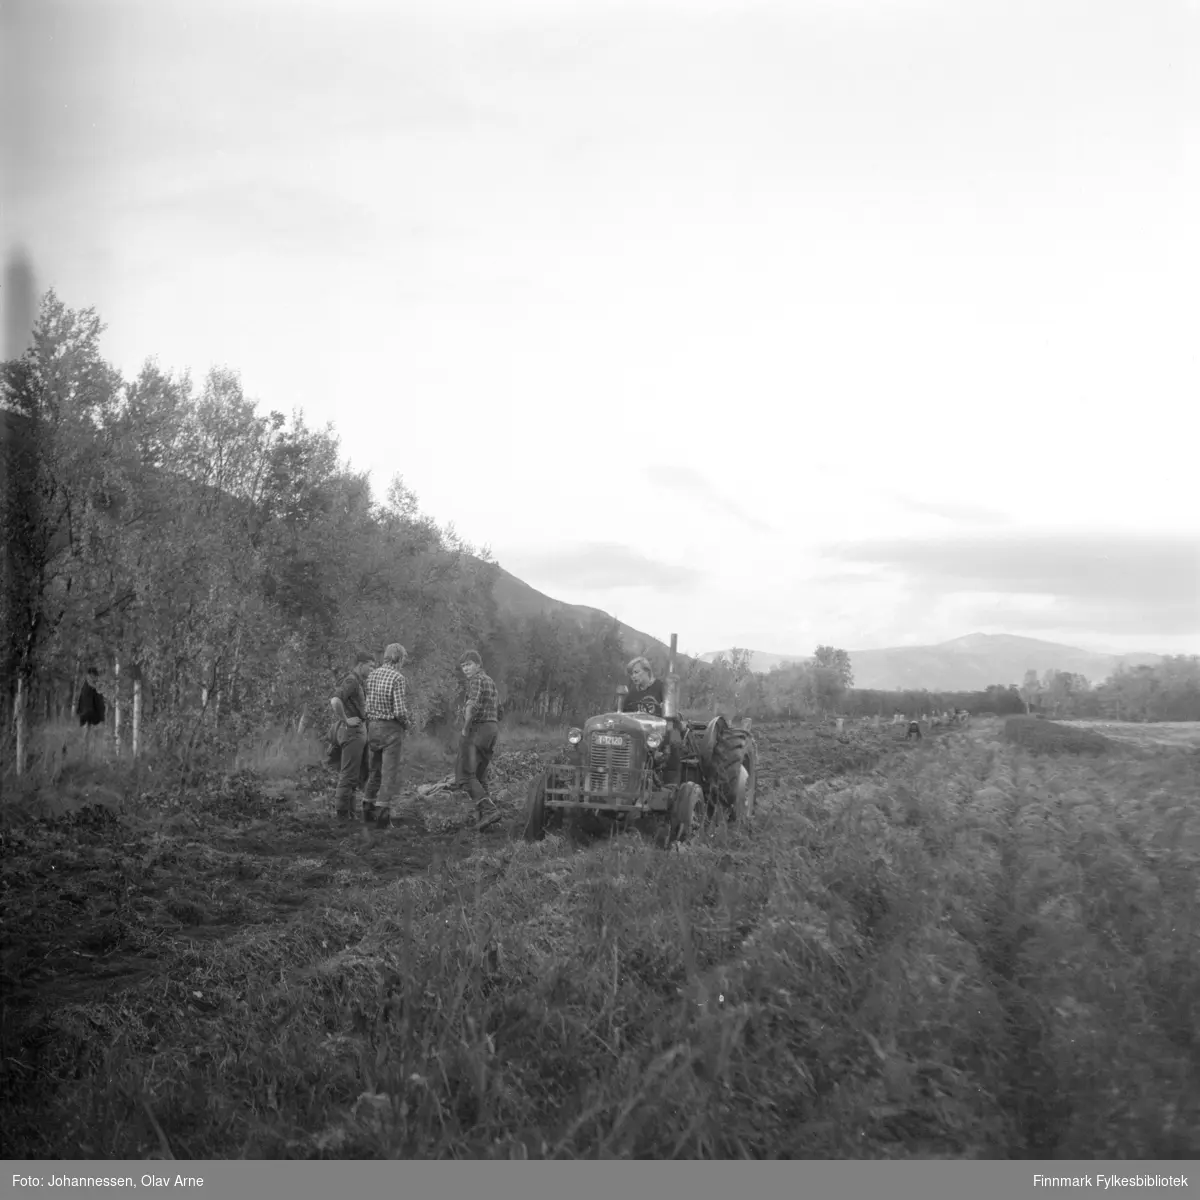 Foto muligens tatt fra Tana i Finnmark, usikker identifisering 

Traktor har skiltnummer Y-12120

Foto trolig tatt på  1960/70-tallet